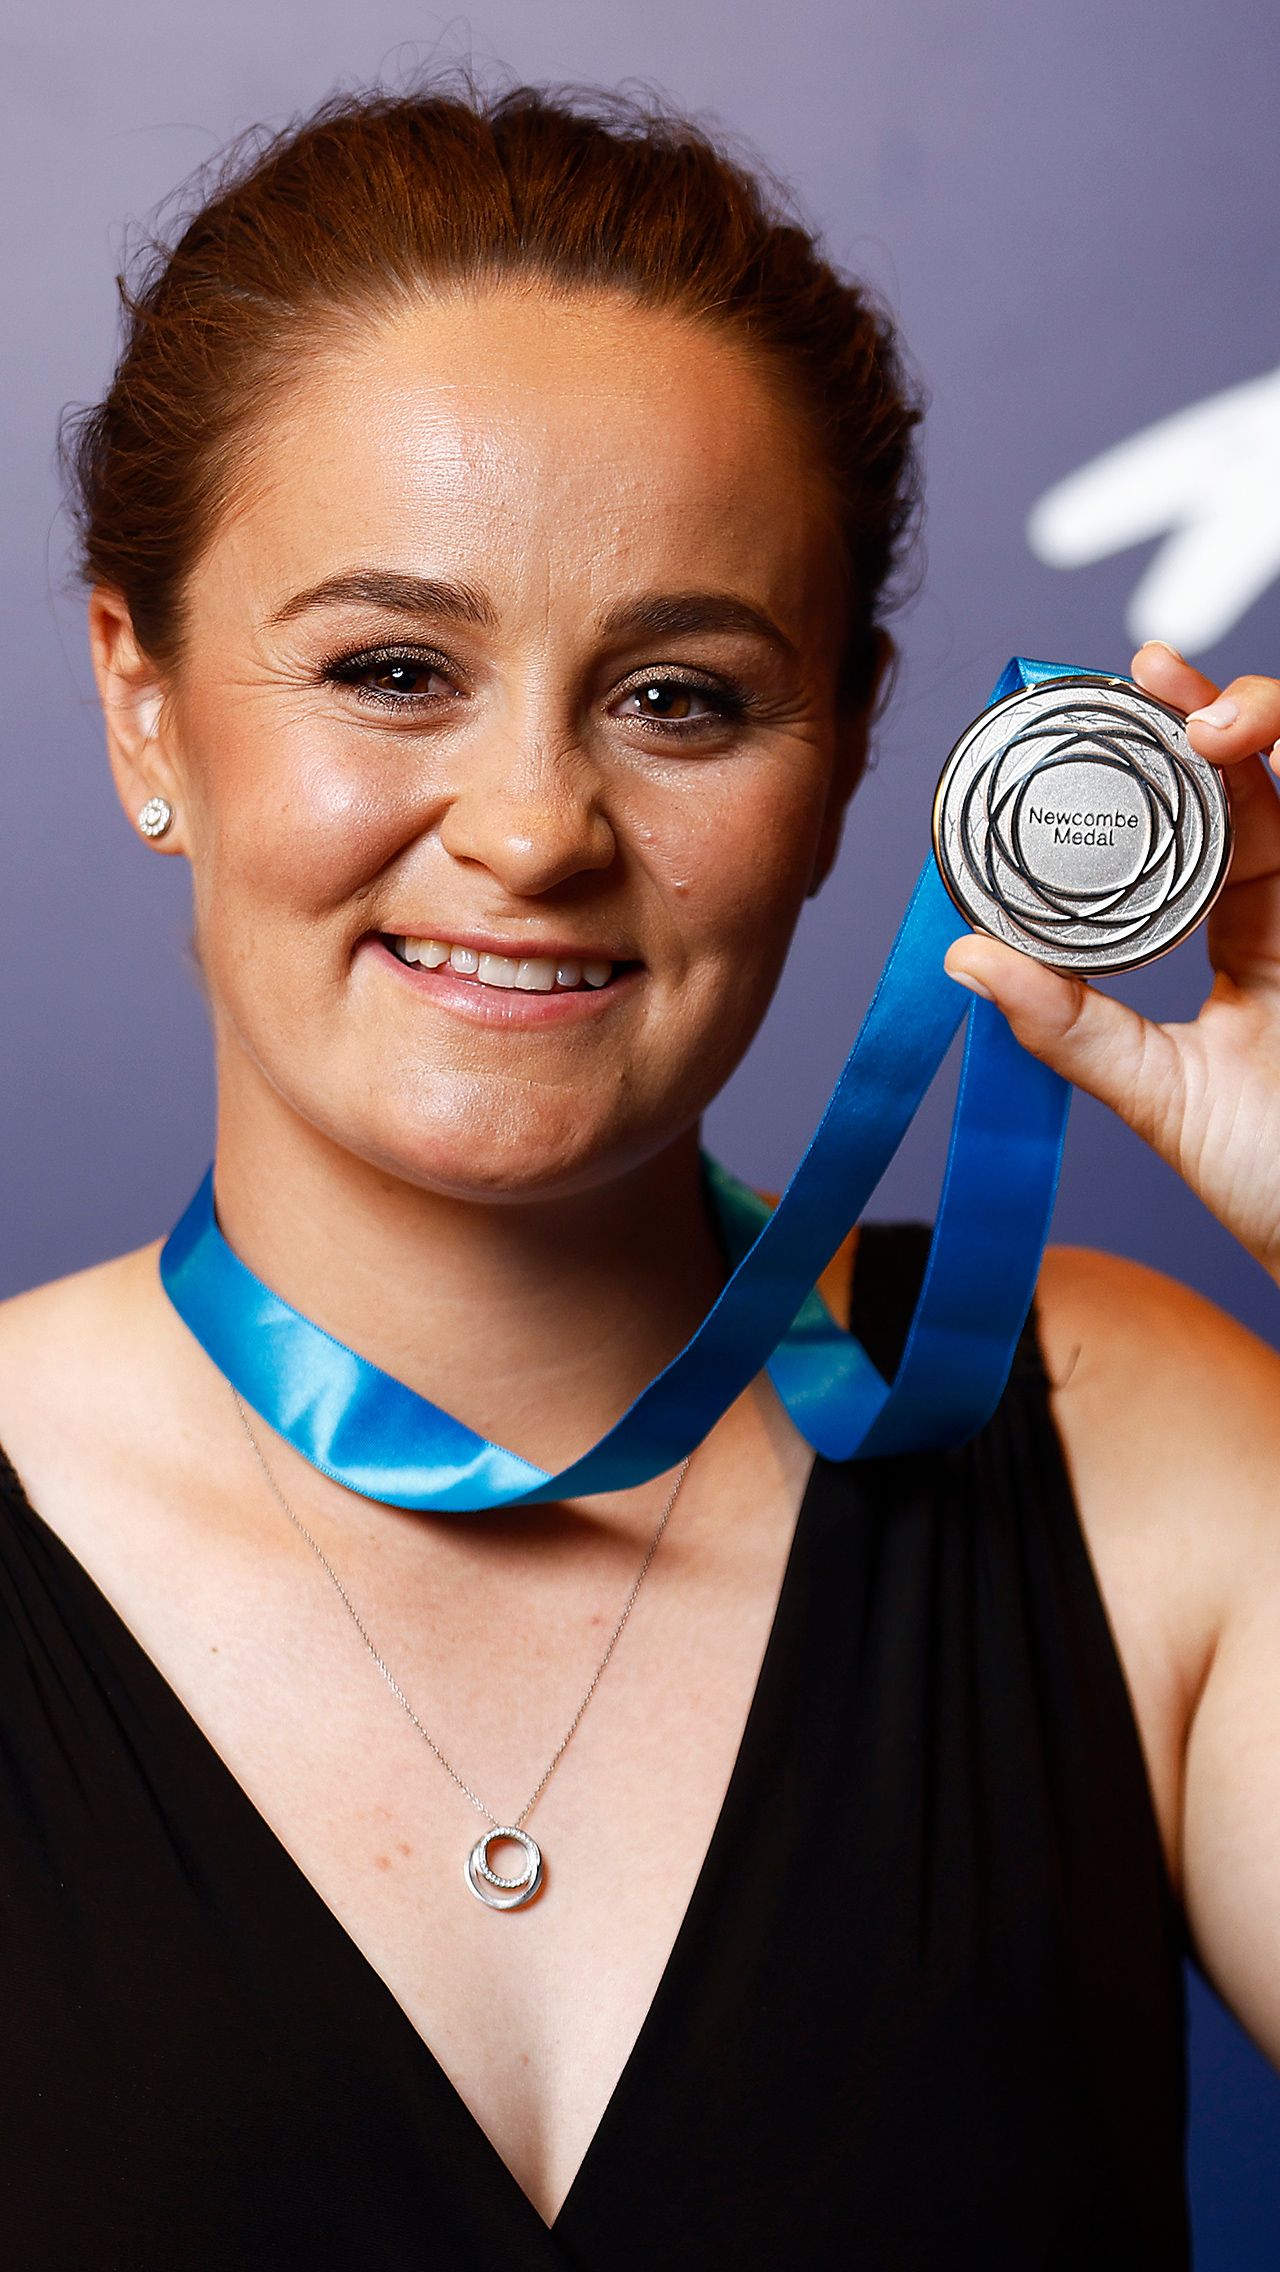 Заслуги Эшли были оценены по достоинству. Недавно она получила главную теннисную награду Австралии — медаль Ньюкомба — как лучшая спортсменка сезона.